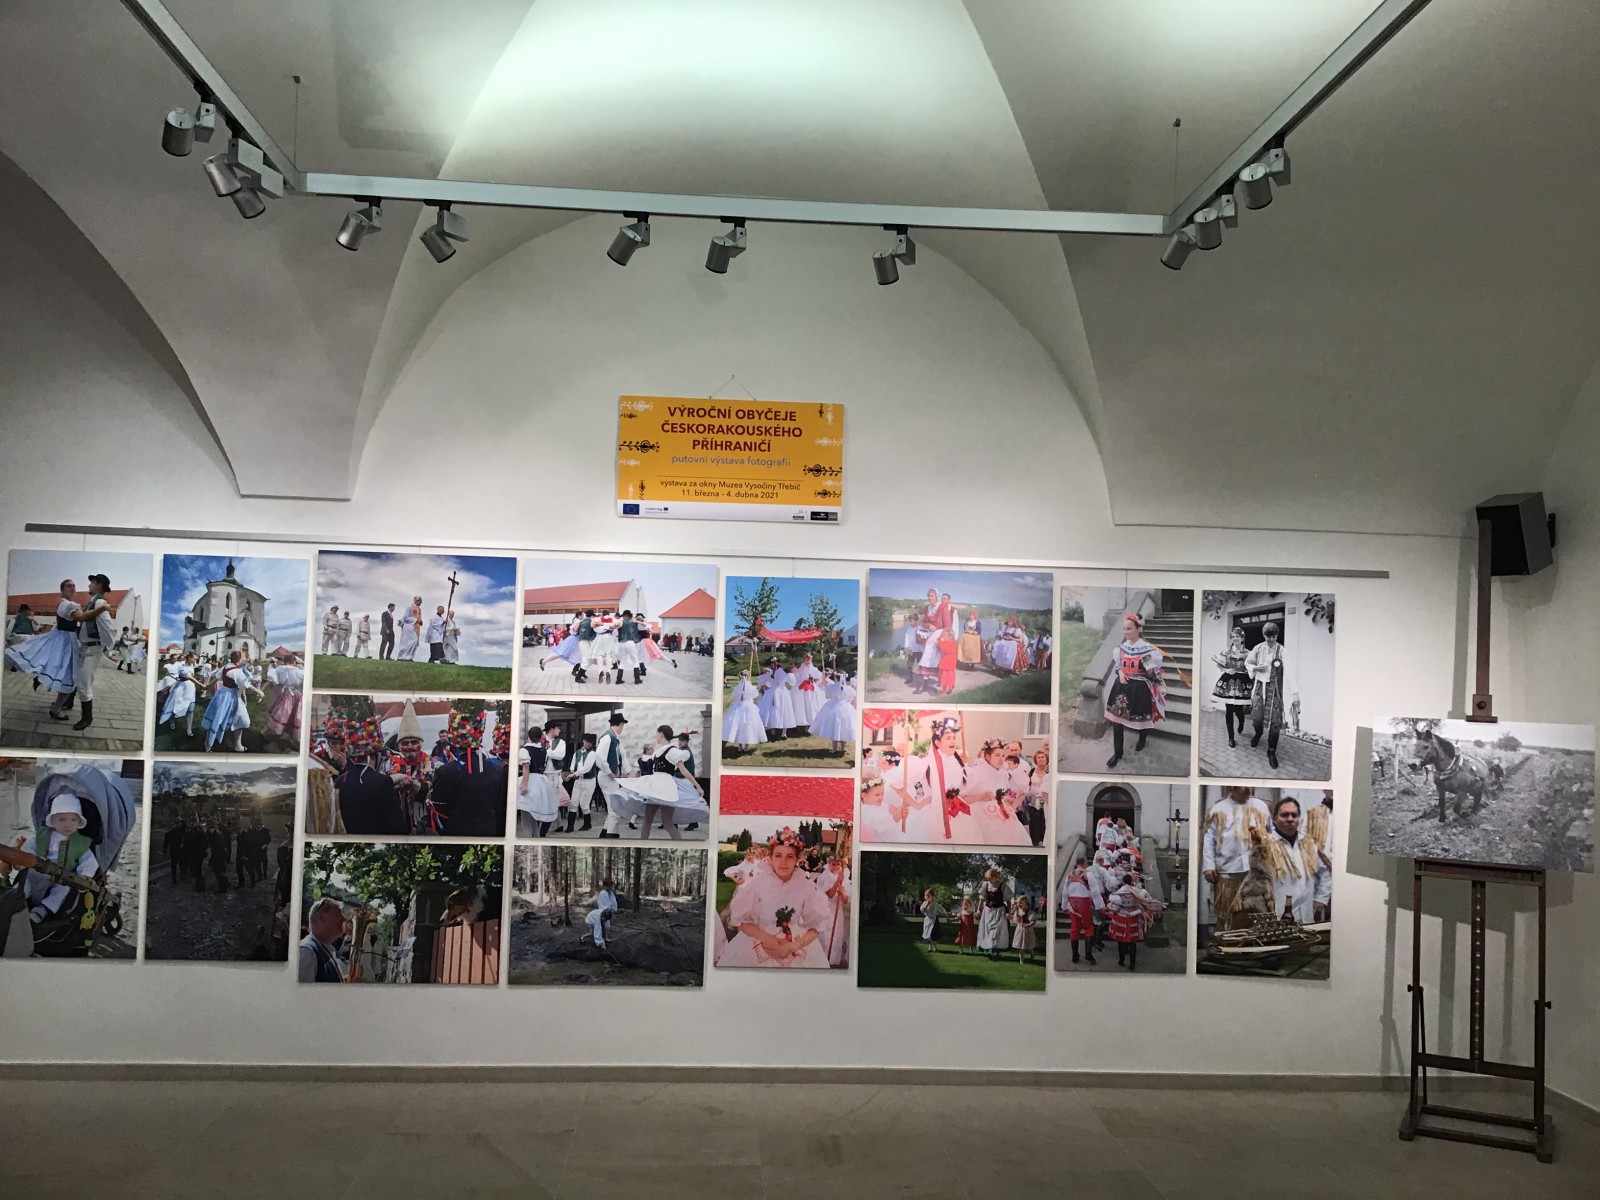 Fotovýstava "Výroční obyčeje česko-rakouského příhraničí" putuje do dalších regionů